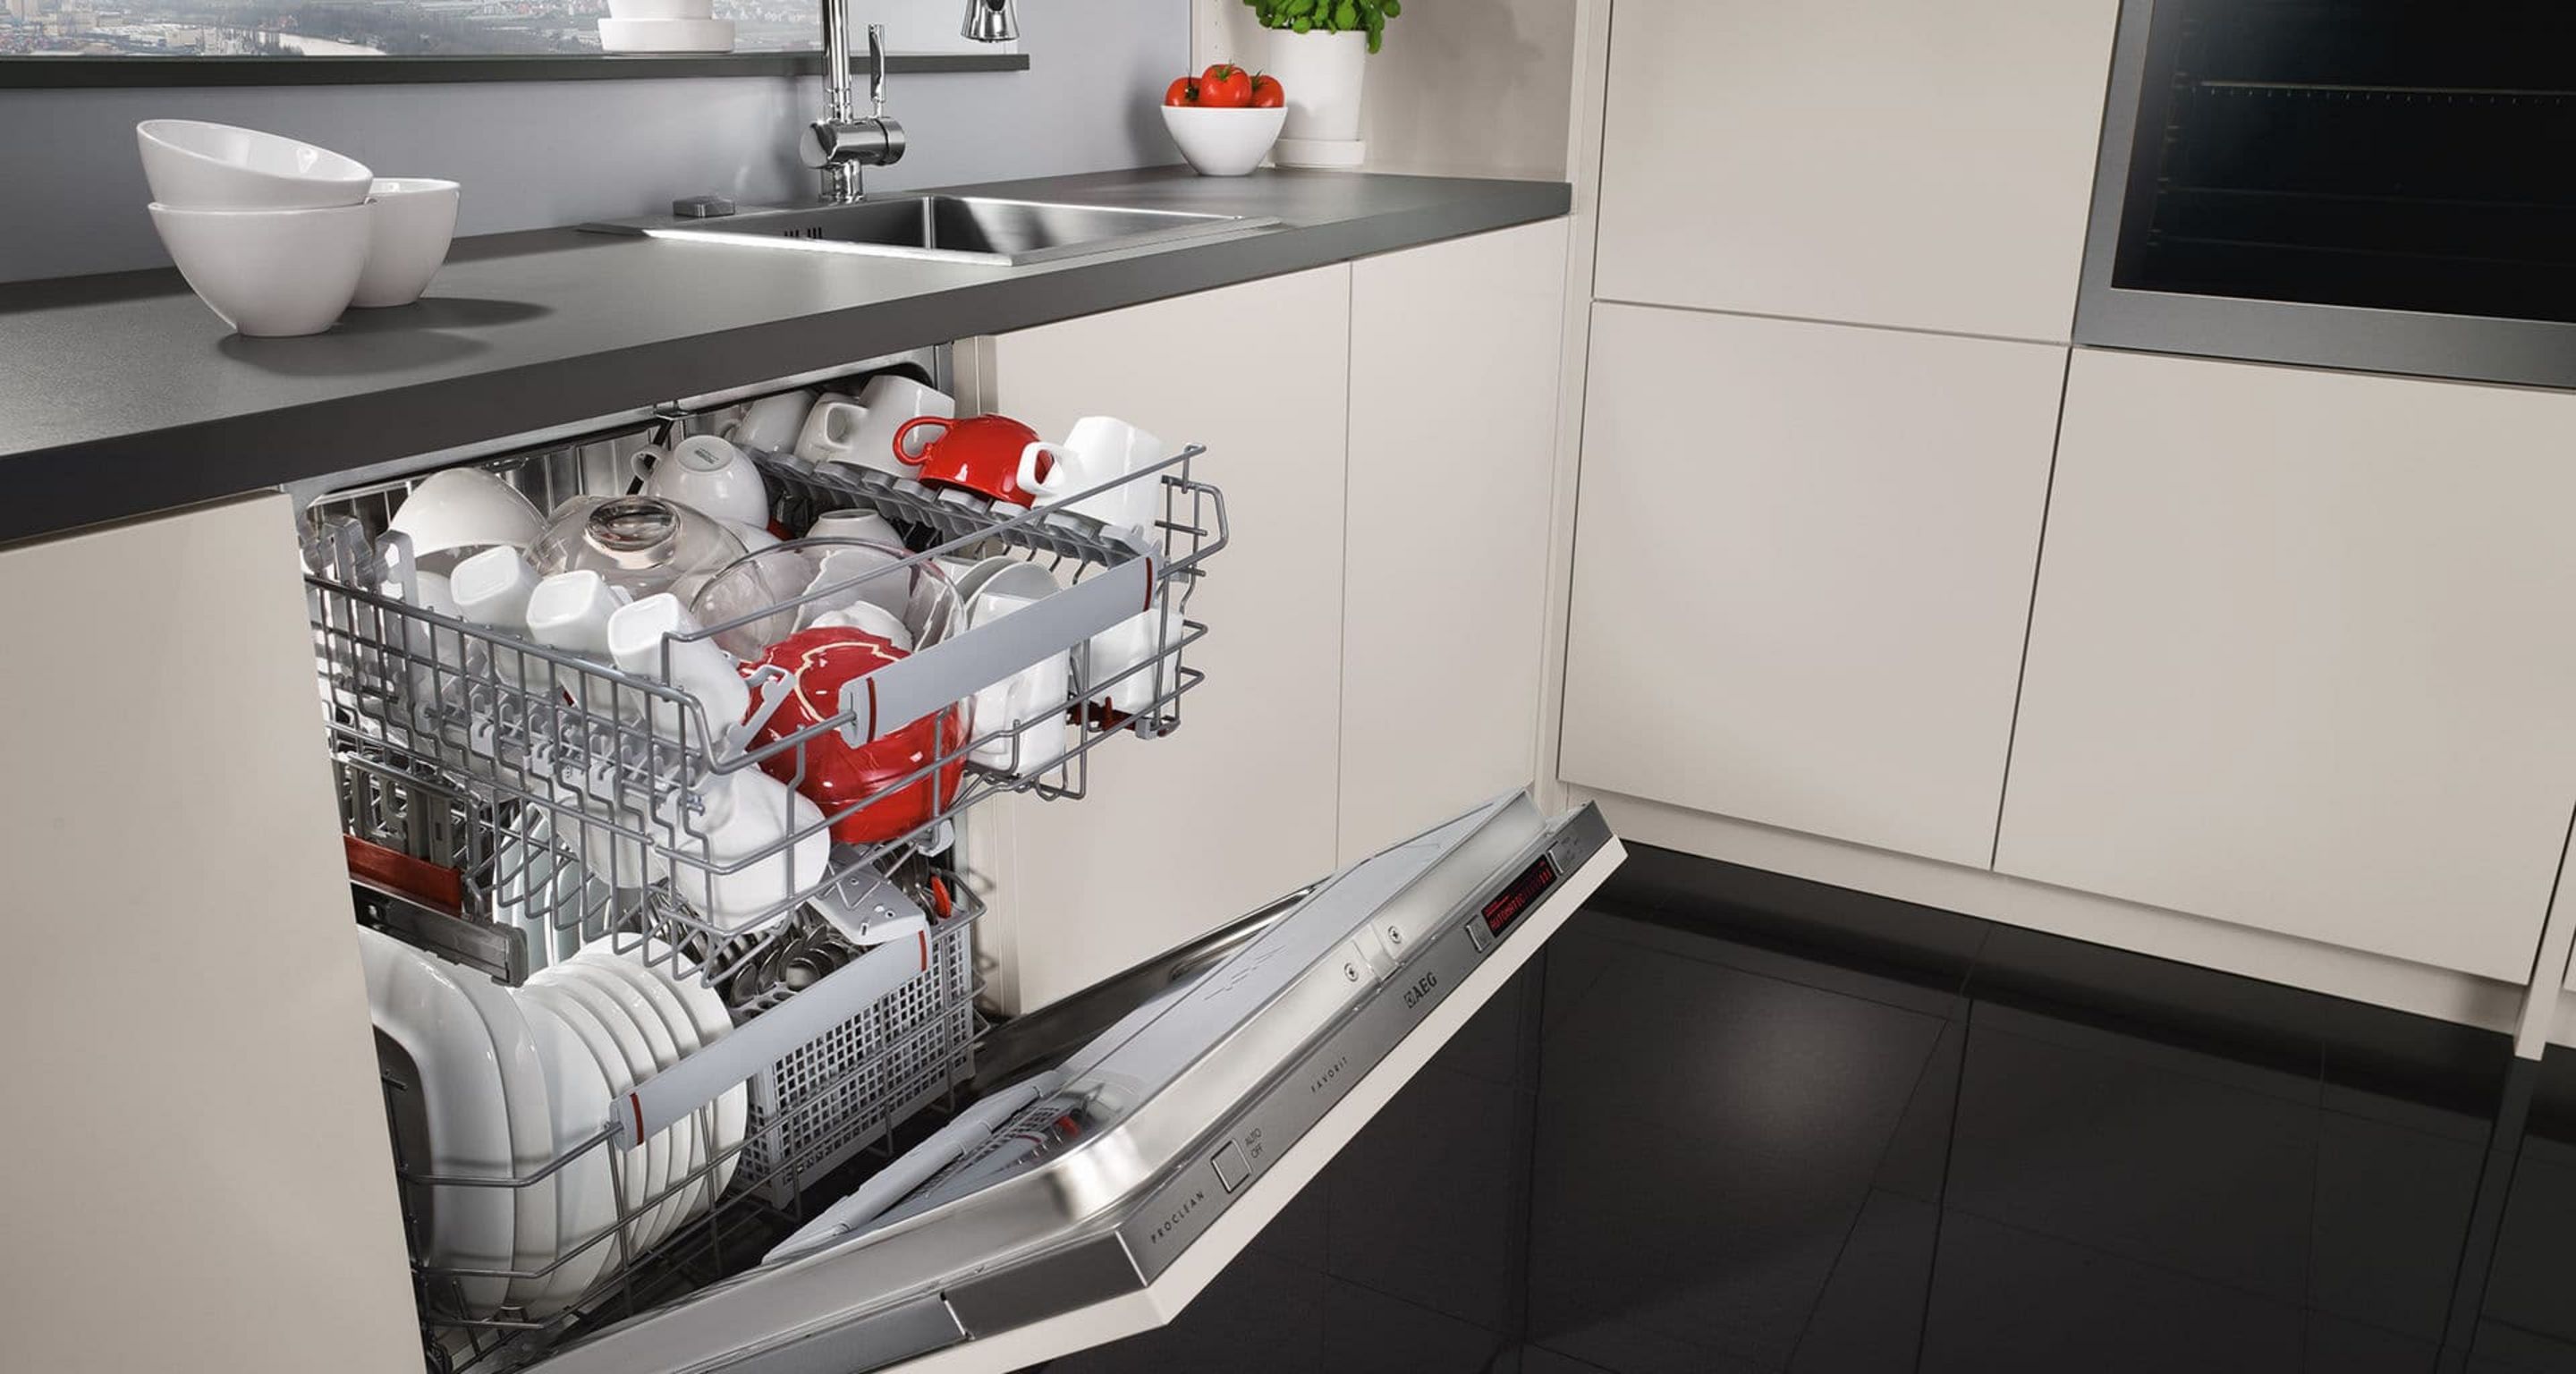 Посудомоечная машина 60 см встраиваемая рейтинг лучших. ПММ 450 встраиваемая под фасад 600. Топ посудомоечных машин 60 см встраиваемая 2020. Встроенная компактная ПММ 600. Посудомойка 45 см встраиваемая.